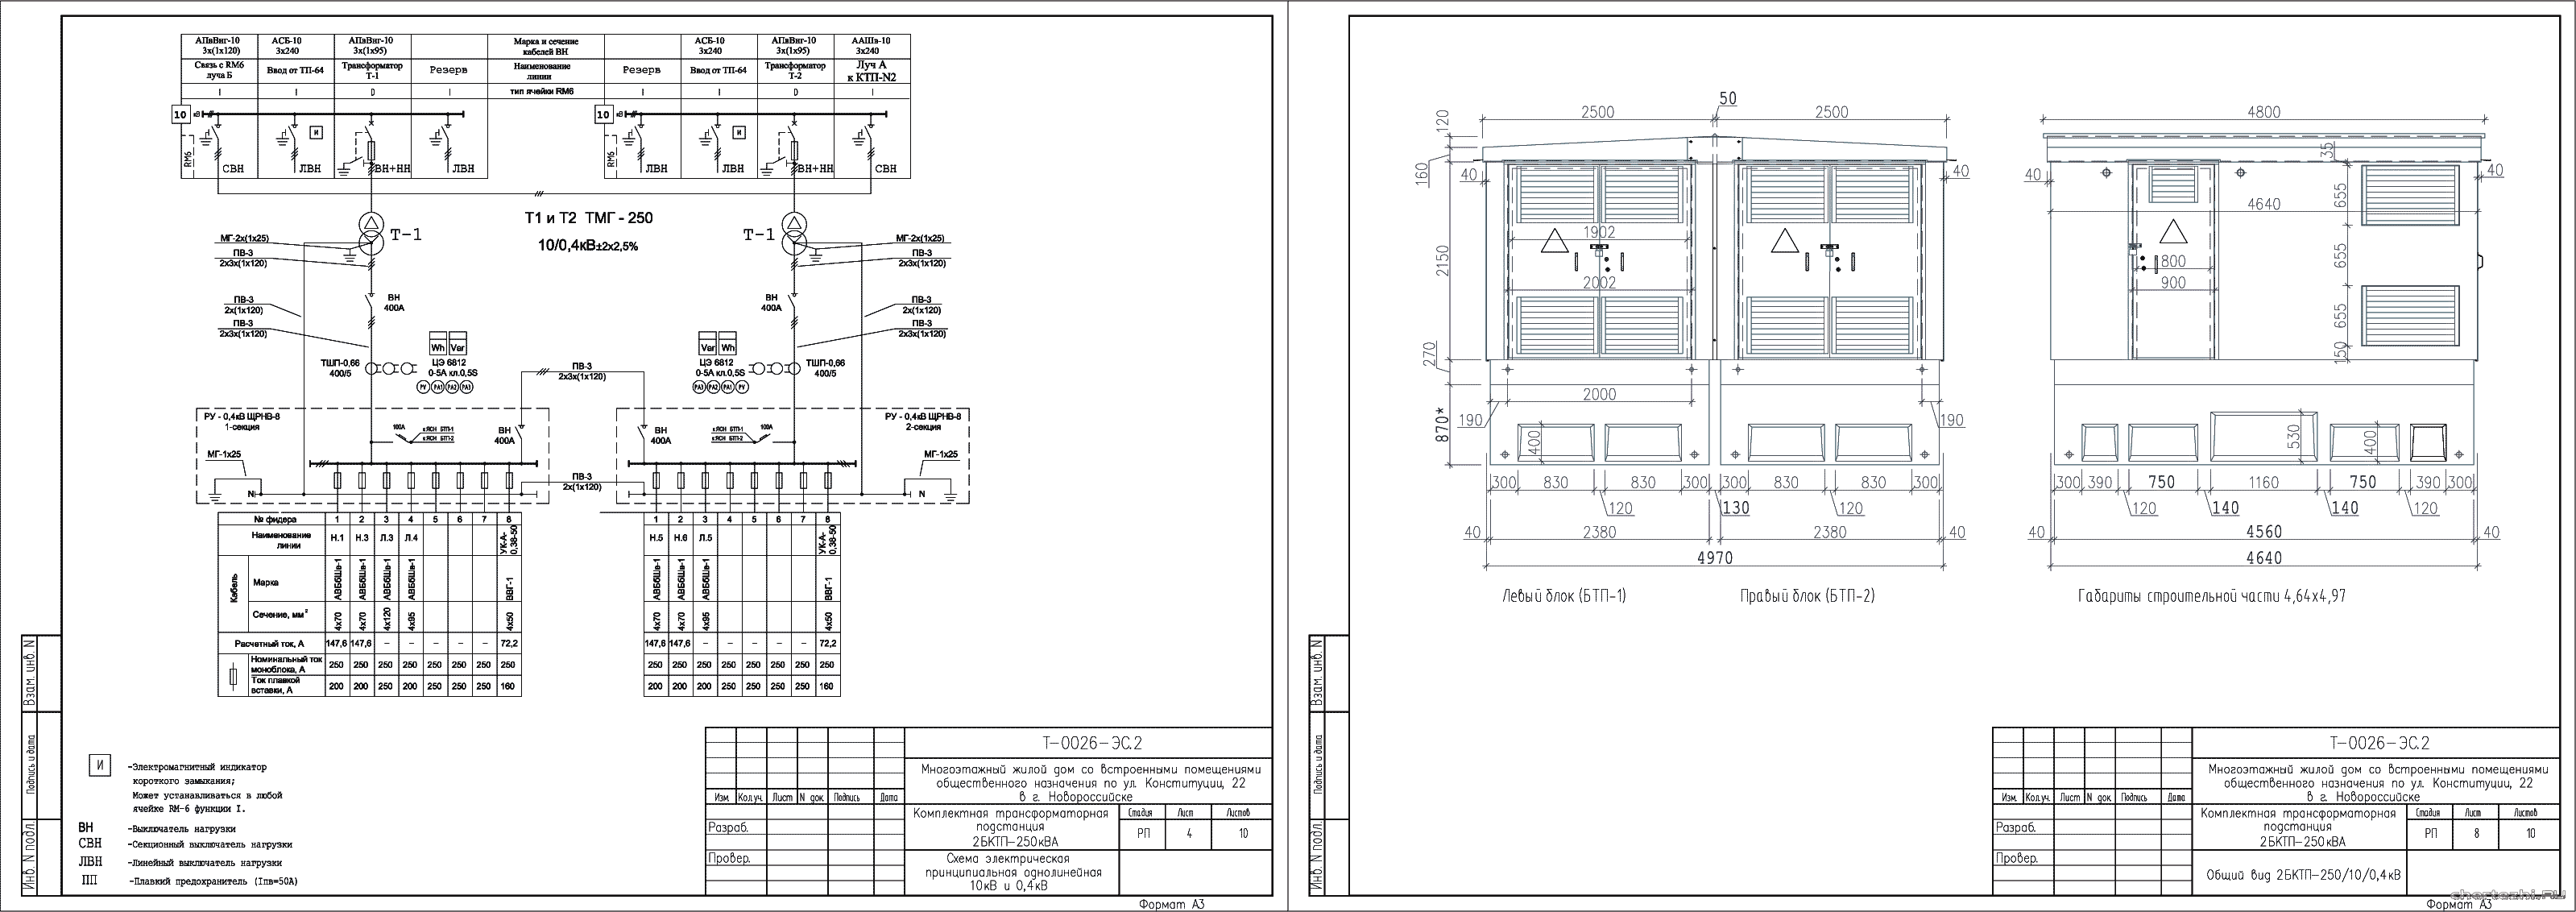 Карта трансформаторных подстанций